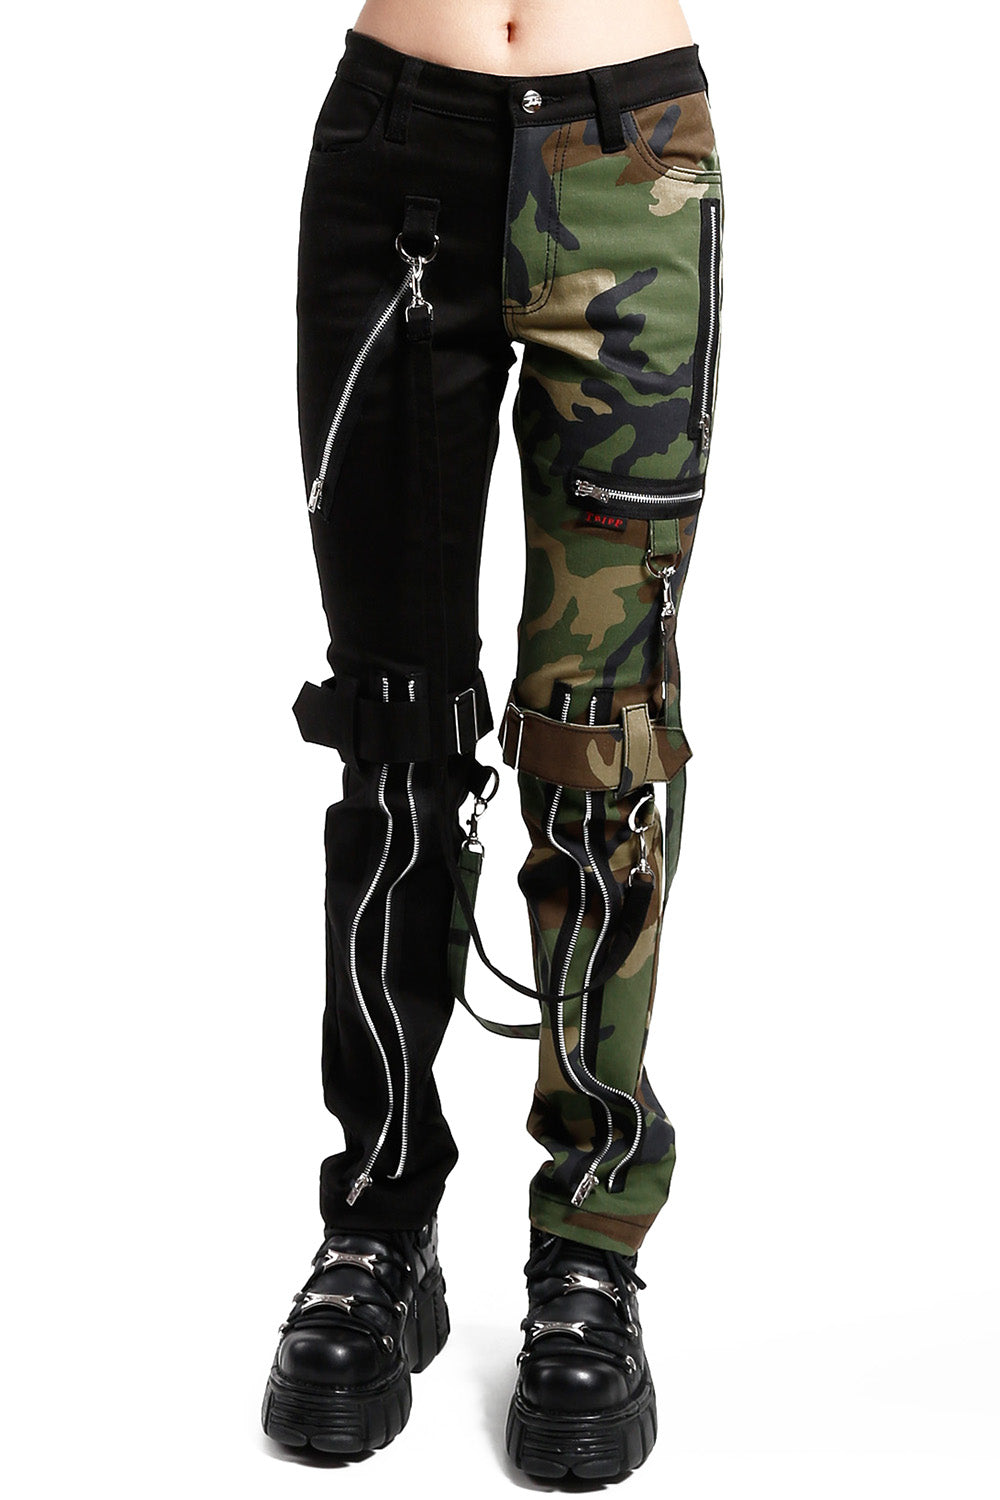 Unisex Split Leg Bondage Pants [Black/Camouflage]